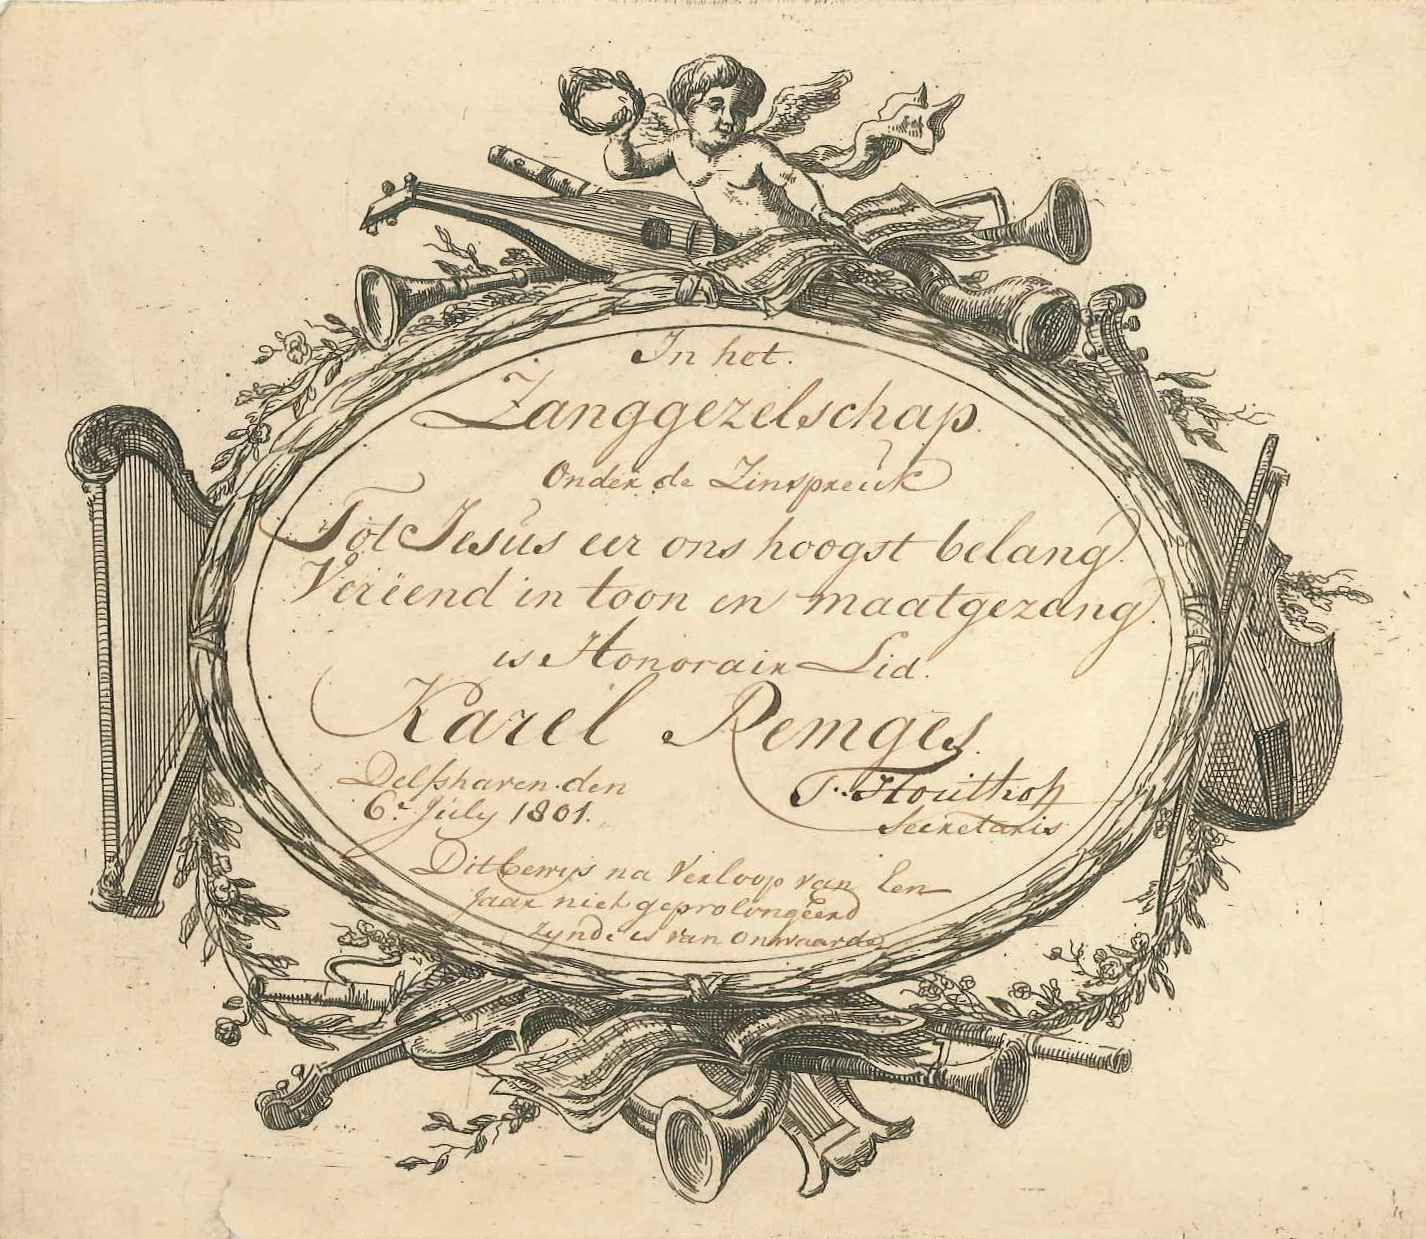 Lidmaatschapsbewijs van Karel Rembges van het zanggezelschap te Delfshaven, 1801.